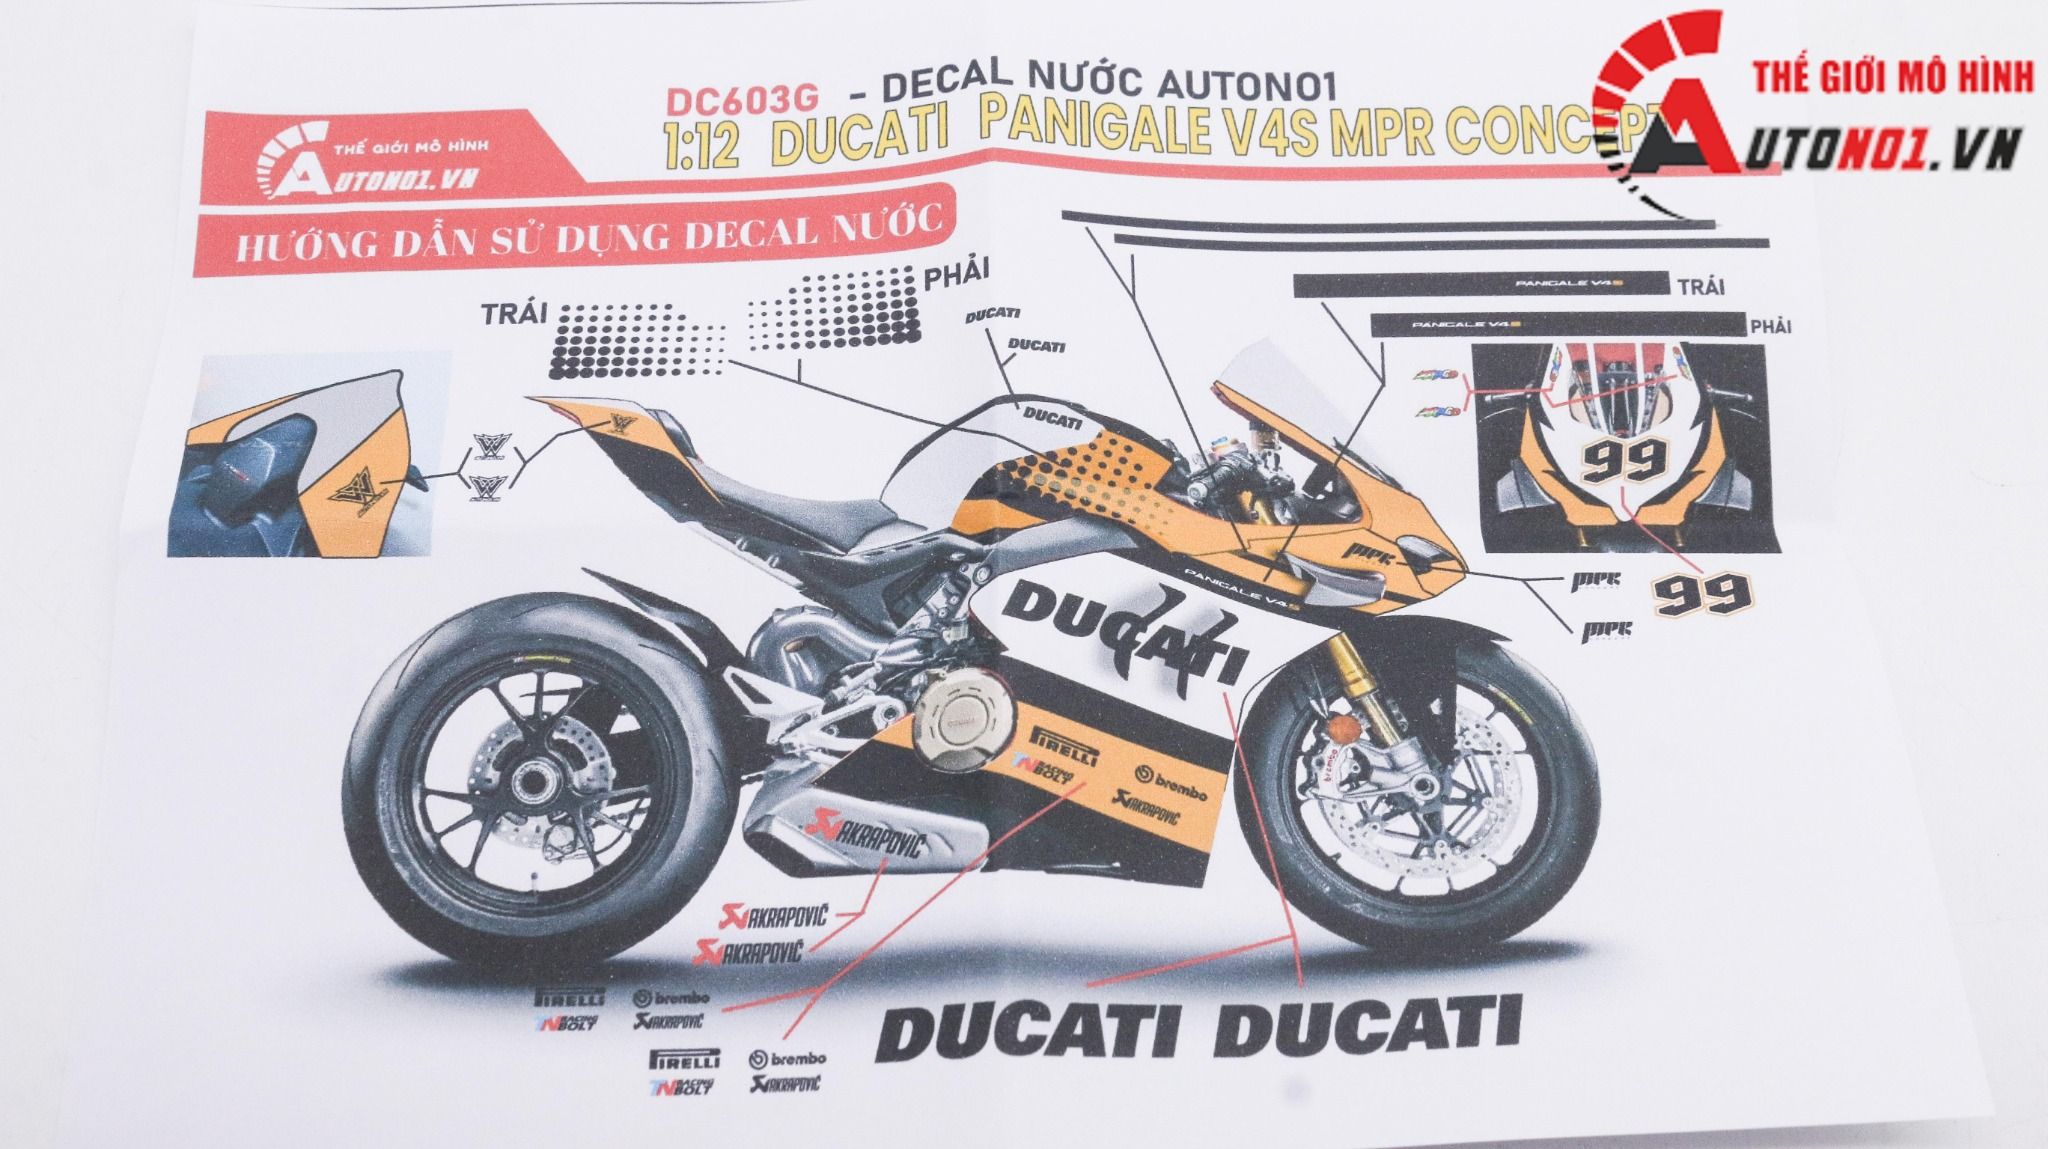  Decal nước độ Ducati Panigale V4S Mpr Concept tỉ lệ 1:12 Autono1 DC603g 